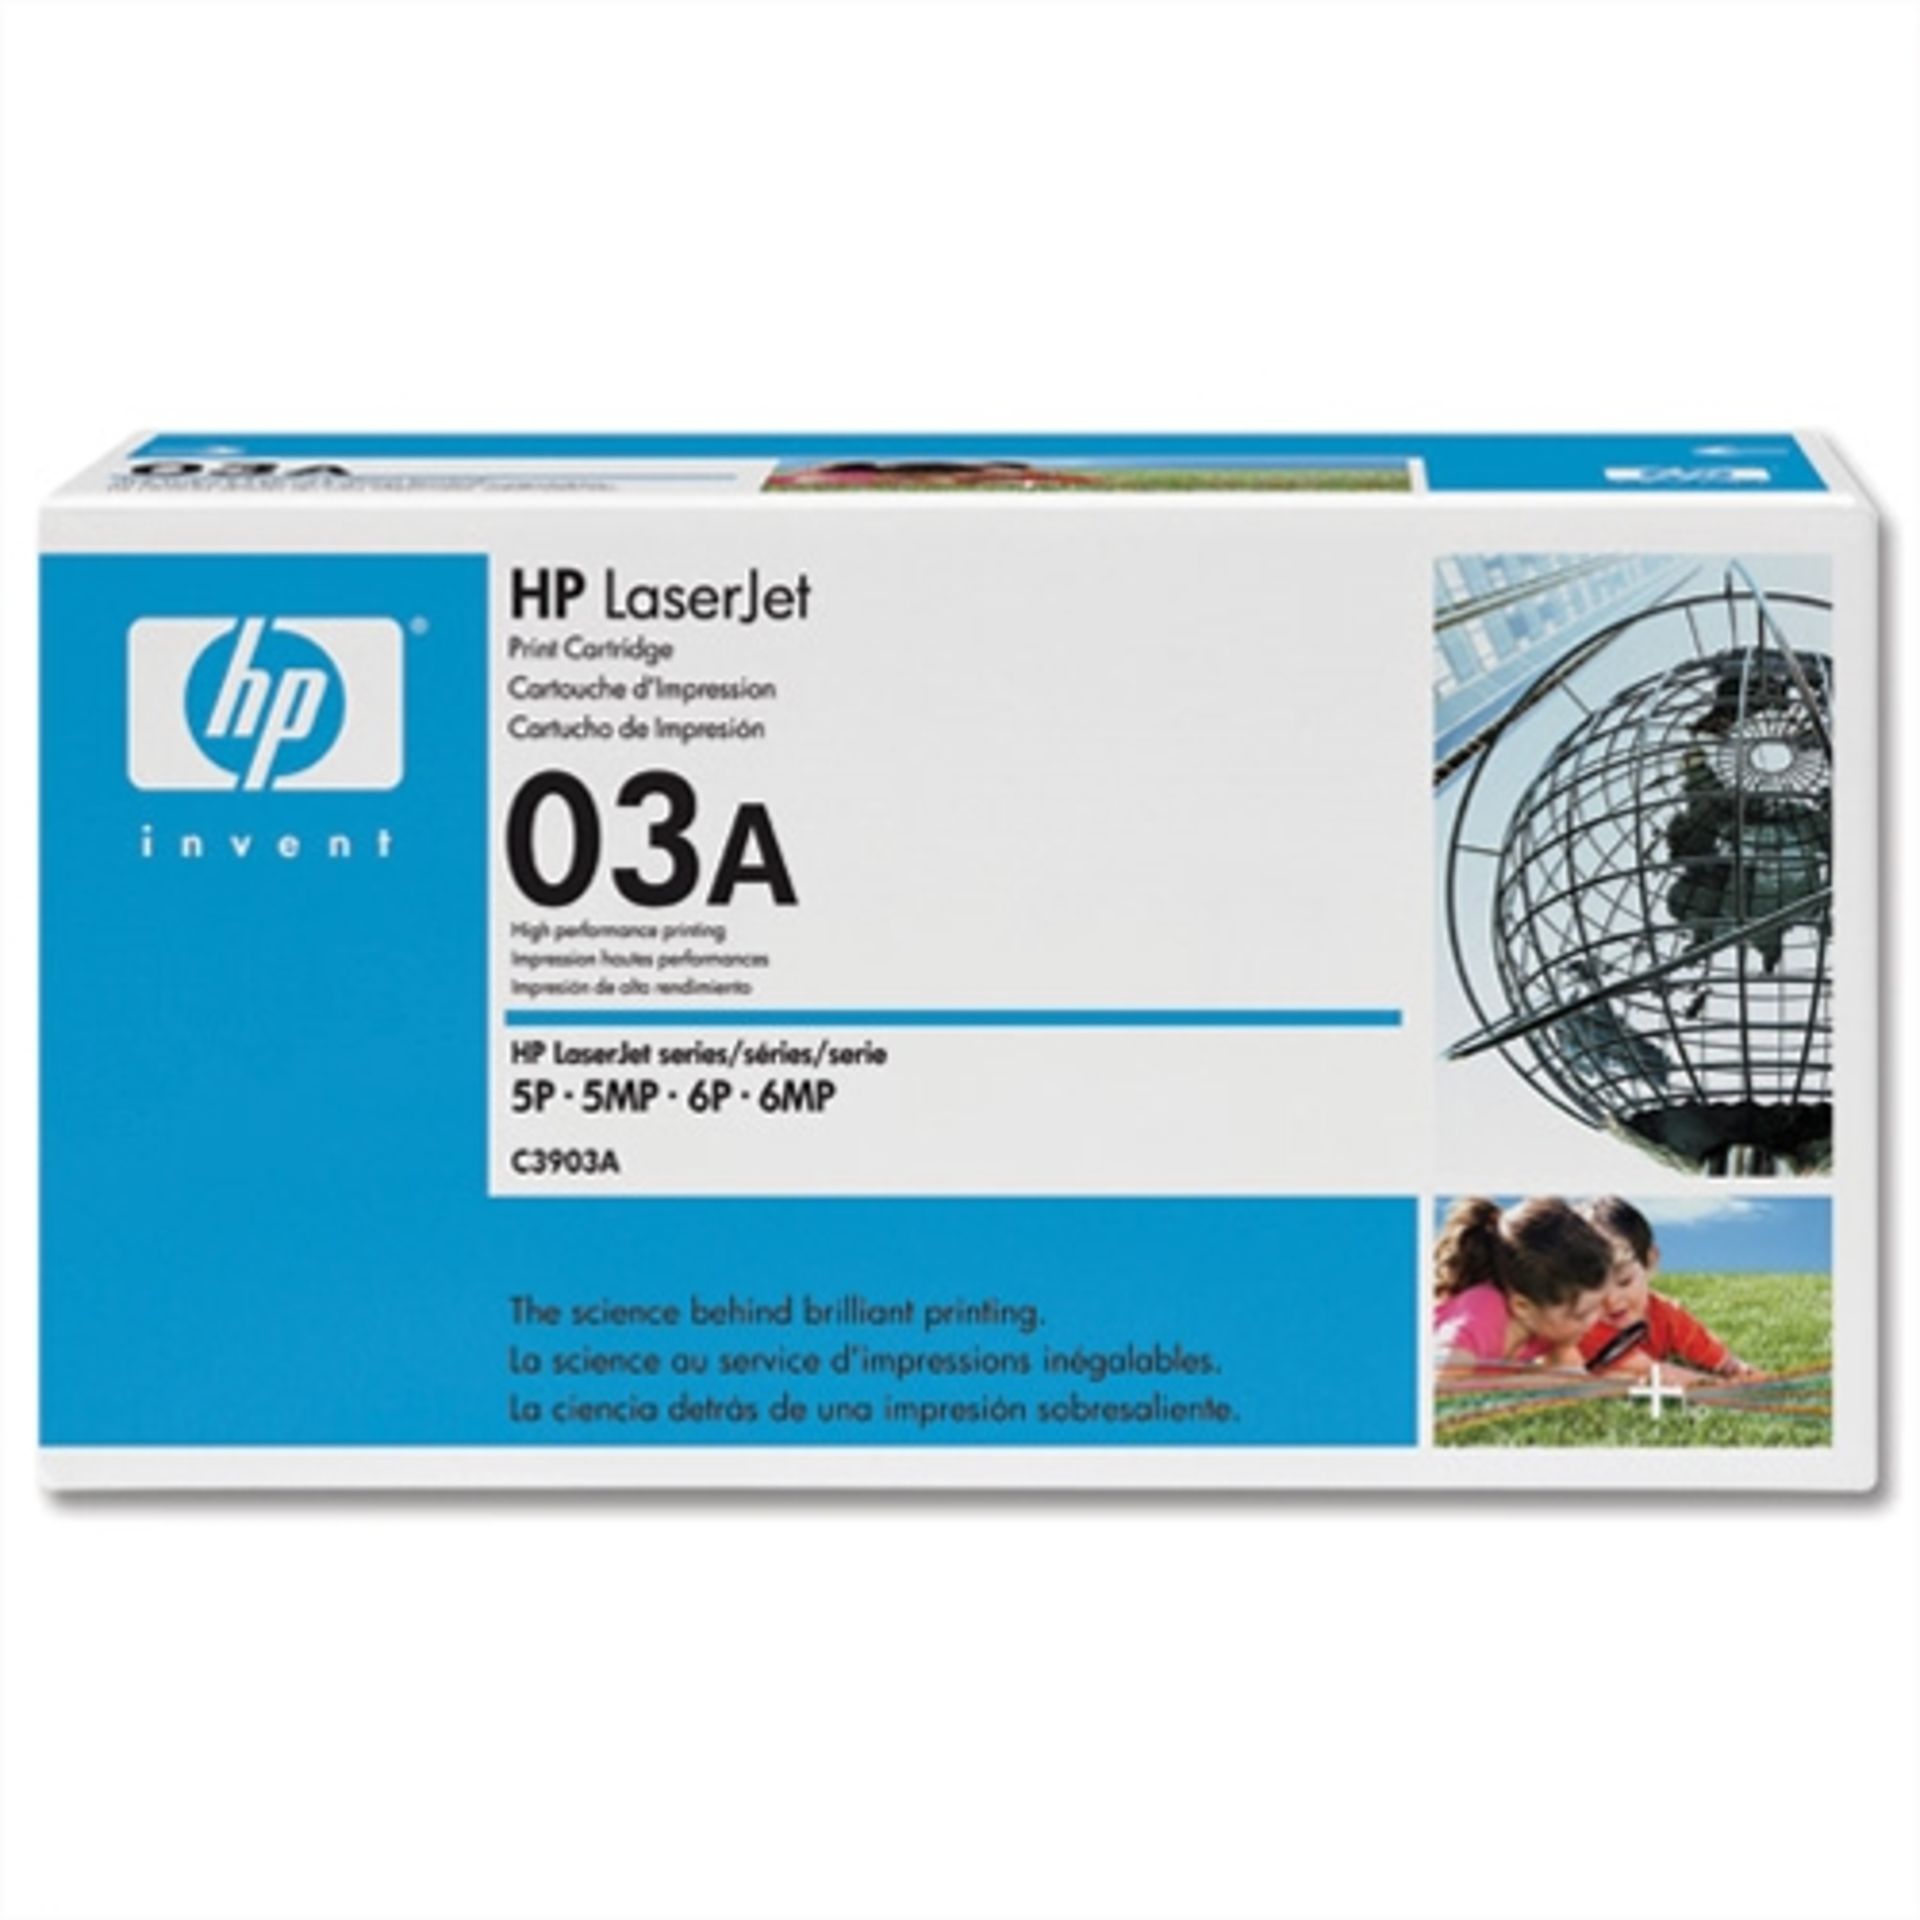 2 x New HP LaserJet 03A Black Print Cartridges - Ref: LD350 - CL409 - Altrincham WA14